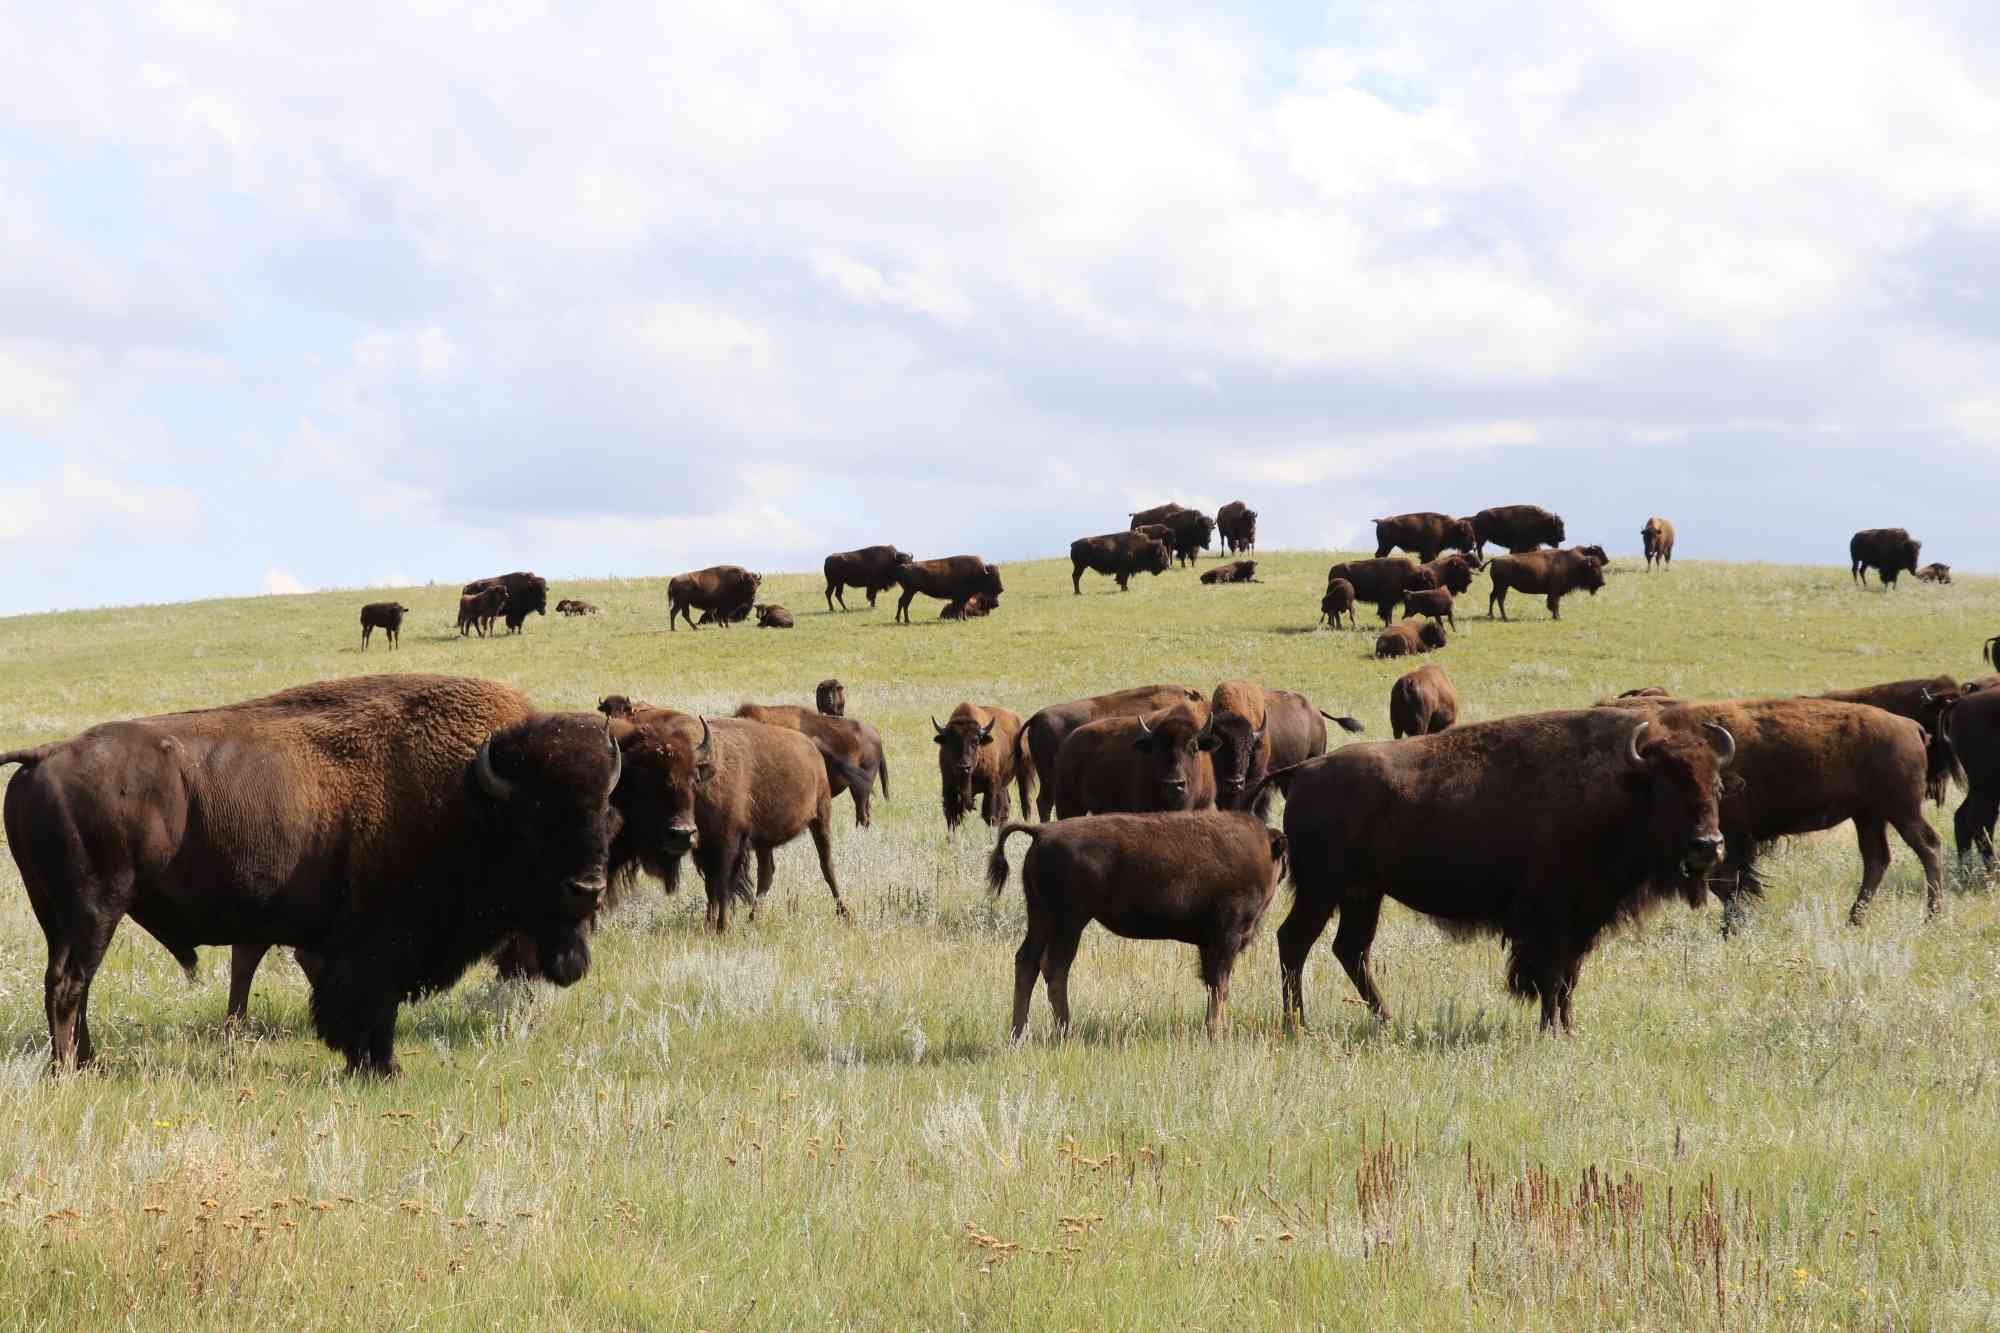 Fort Peck Bison Release - Herd on bison on hill - WS landscape